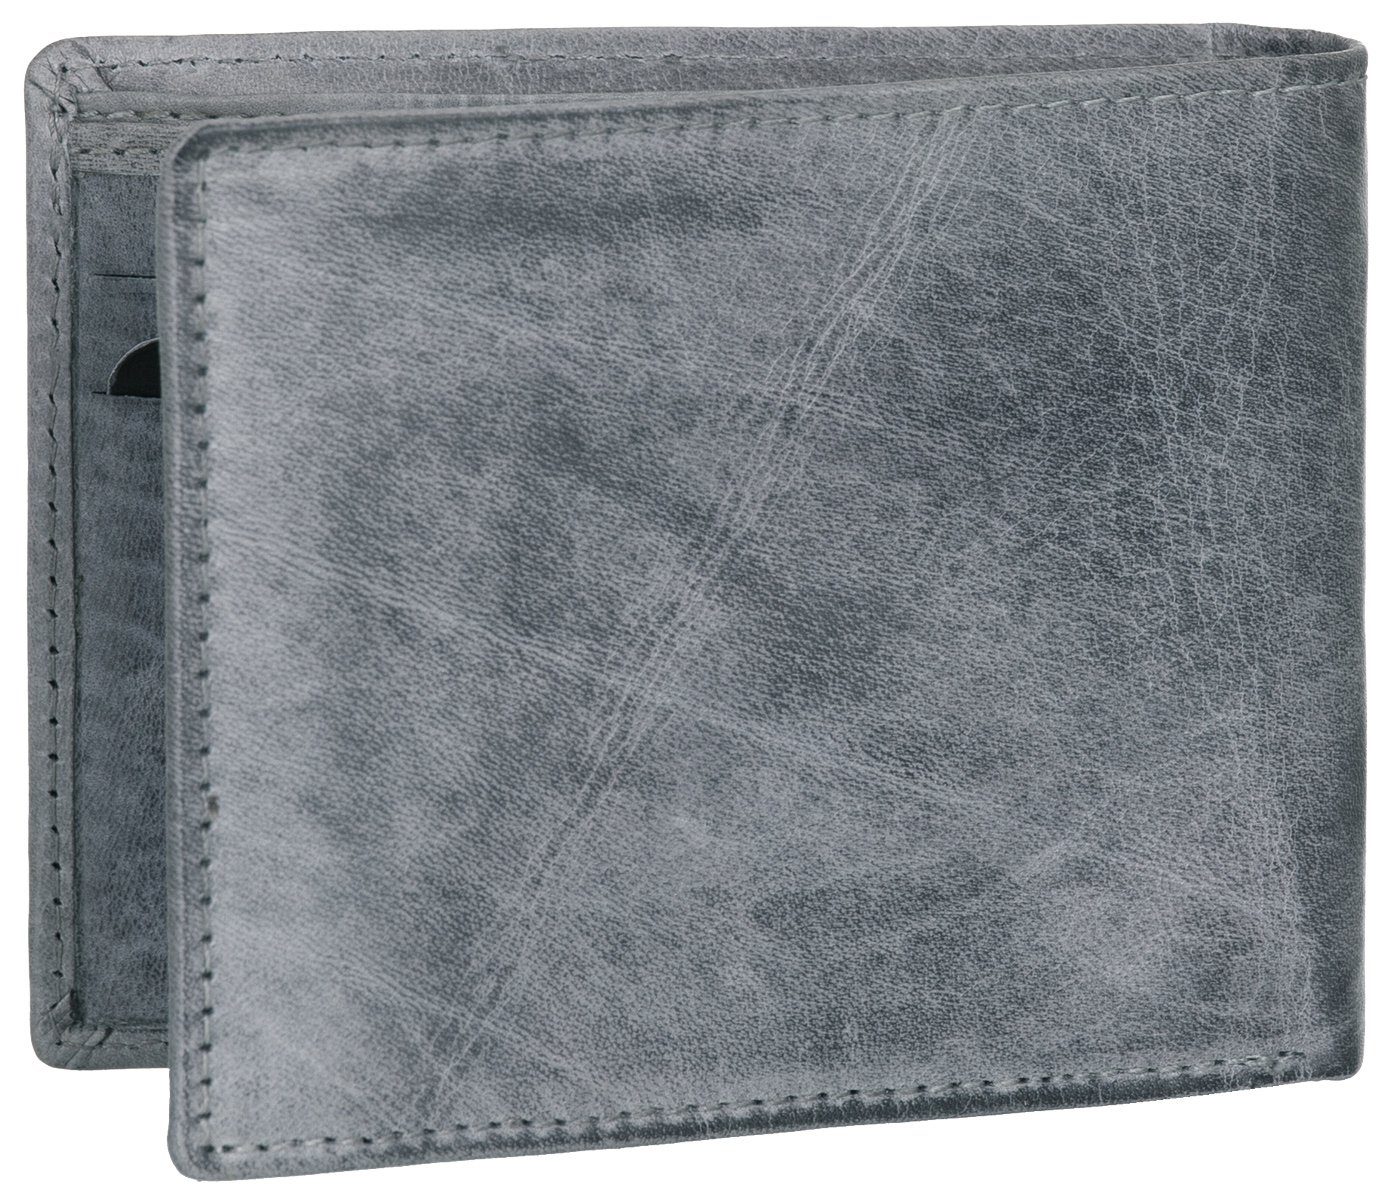 grau Geldbeutel RFID-Schutz flach Portemonnaie J.Jones Echt faltbar Leder Geldbörse, Geldbörse und Münzfach